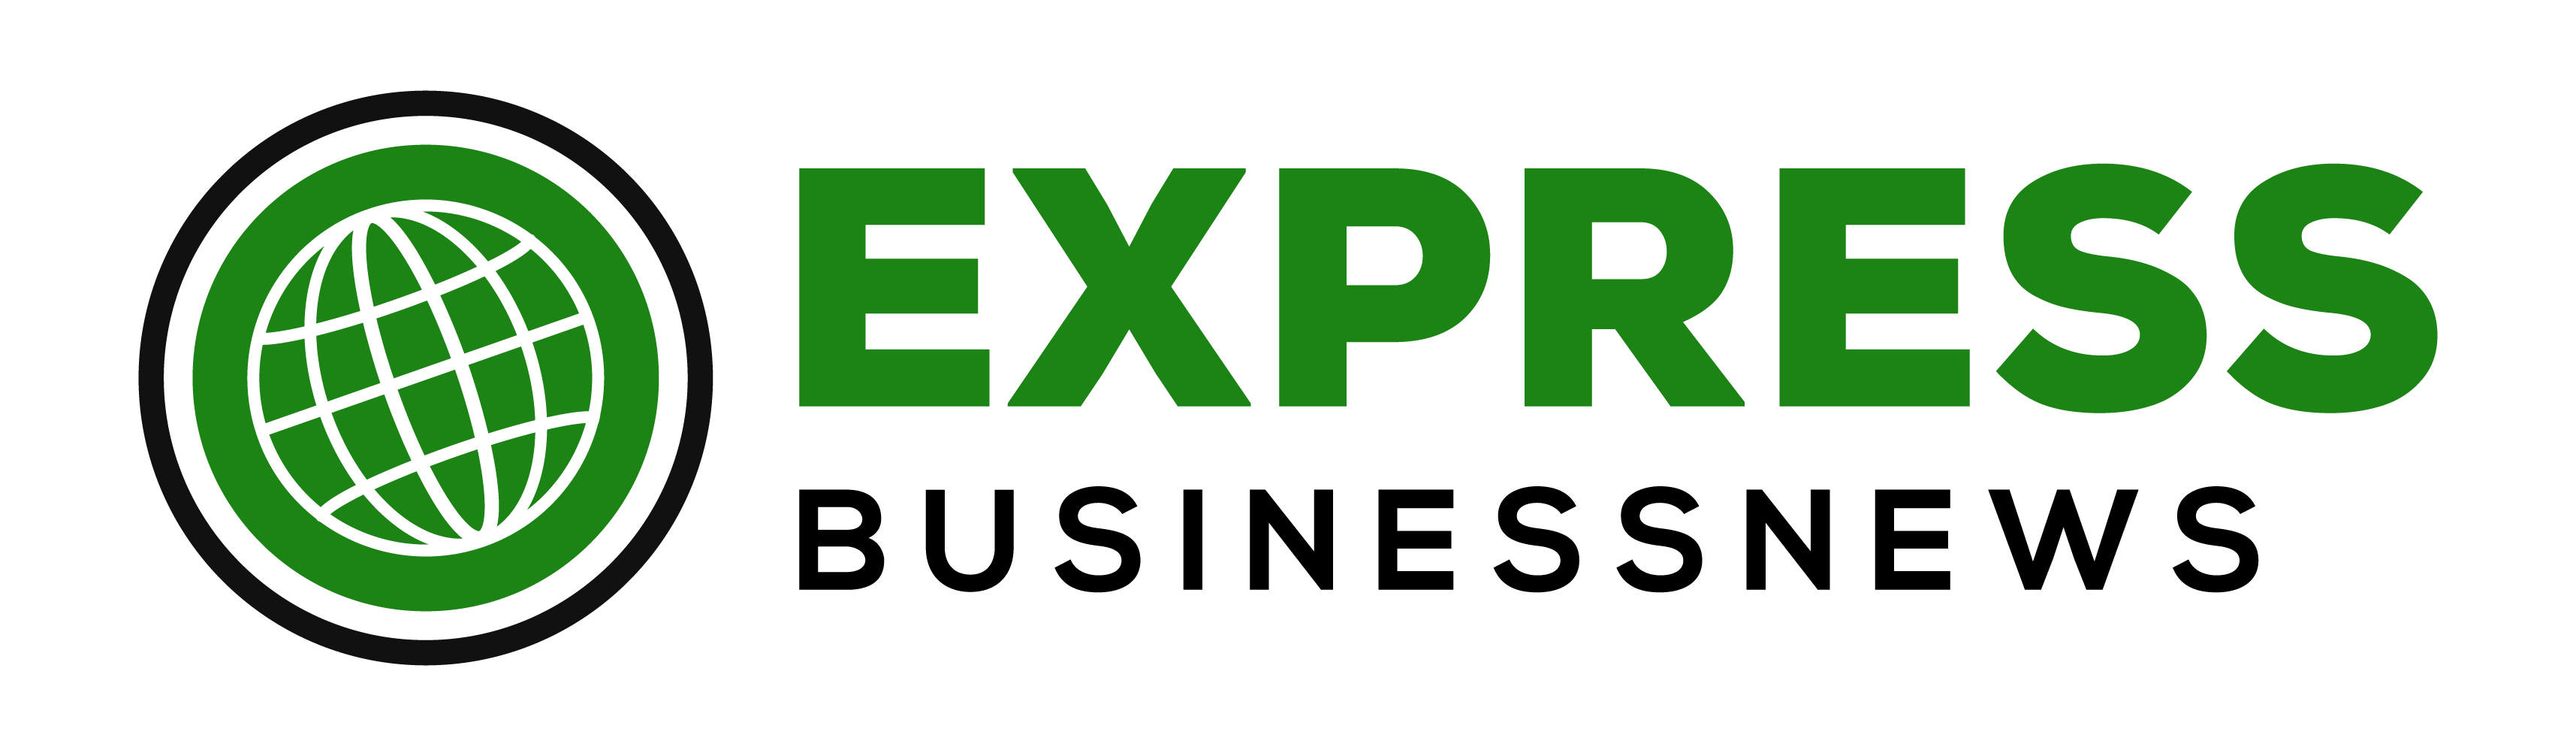 Express Business News